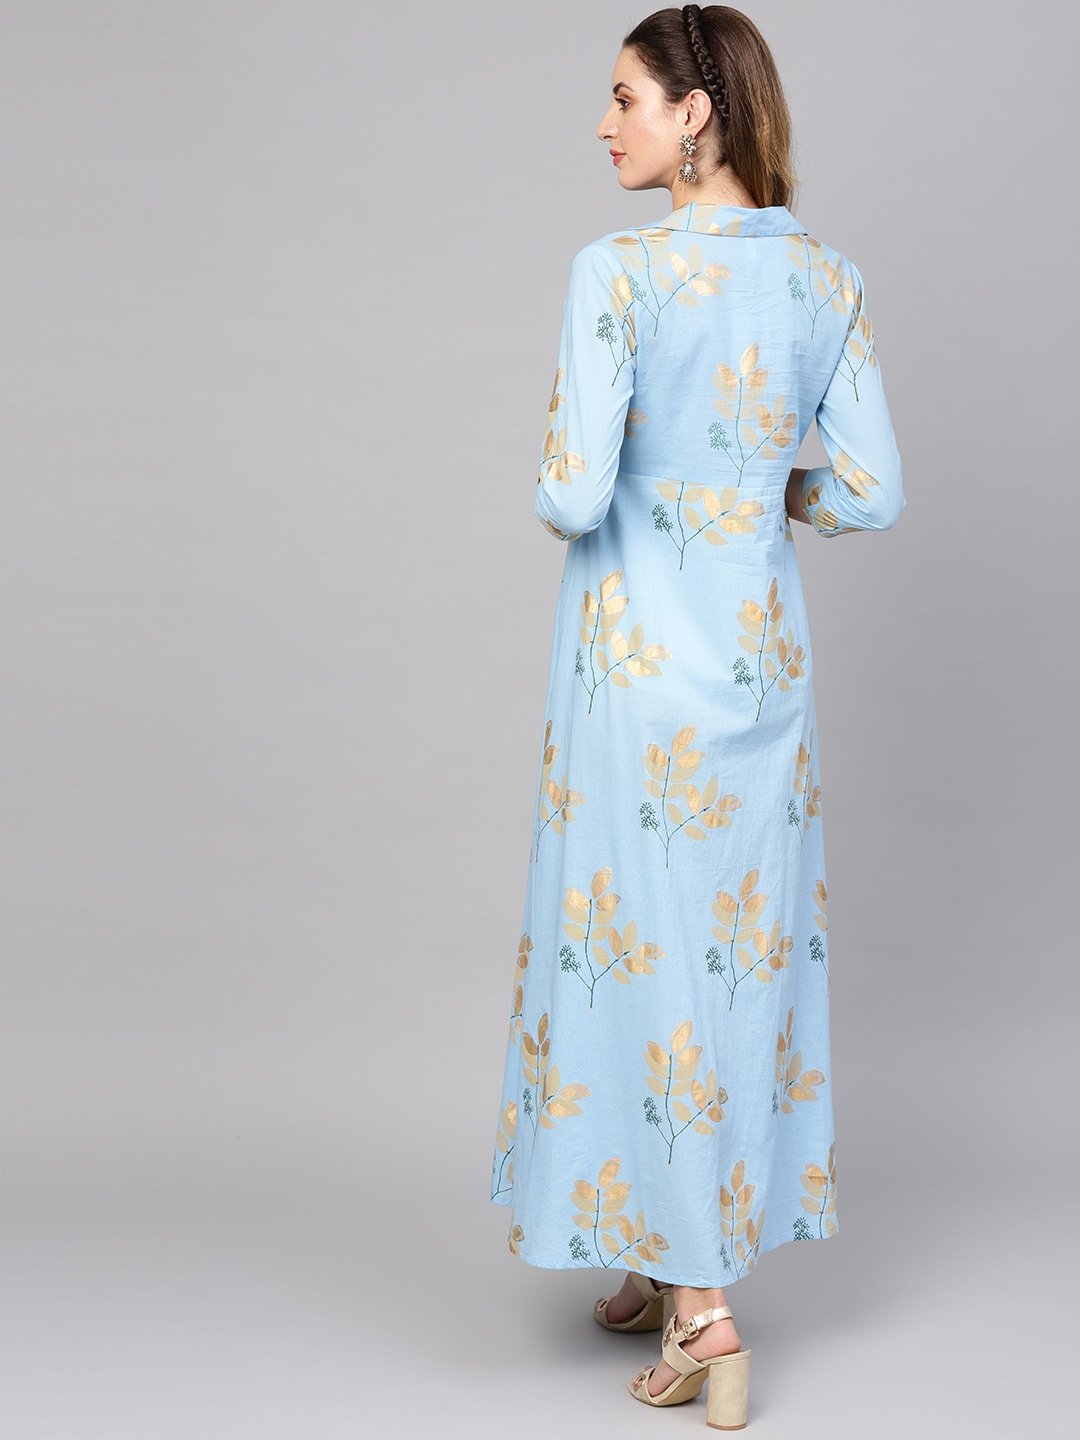 Women's  Blue & Golden Printed Maxi Dress - AKS